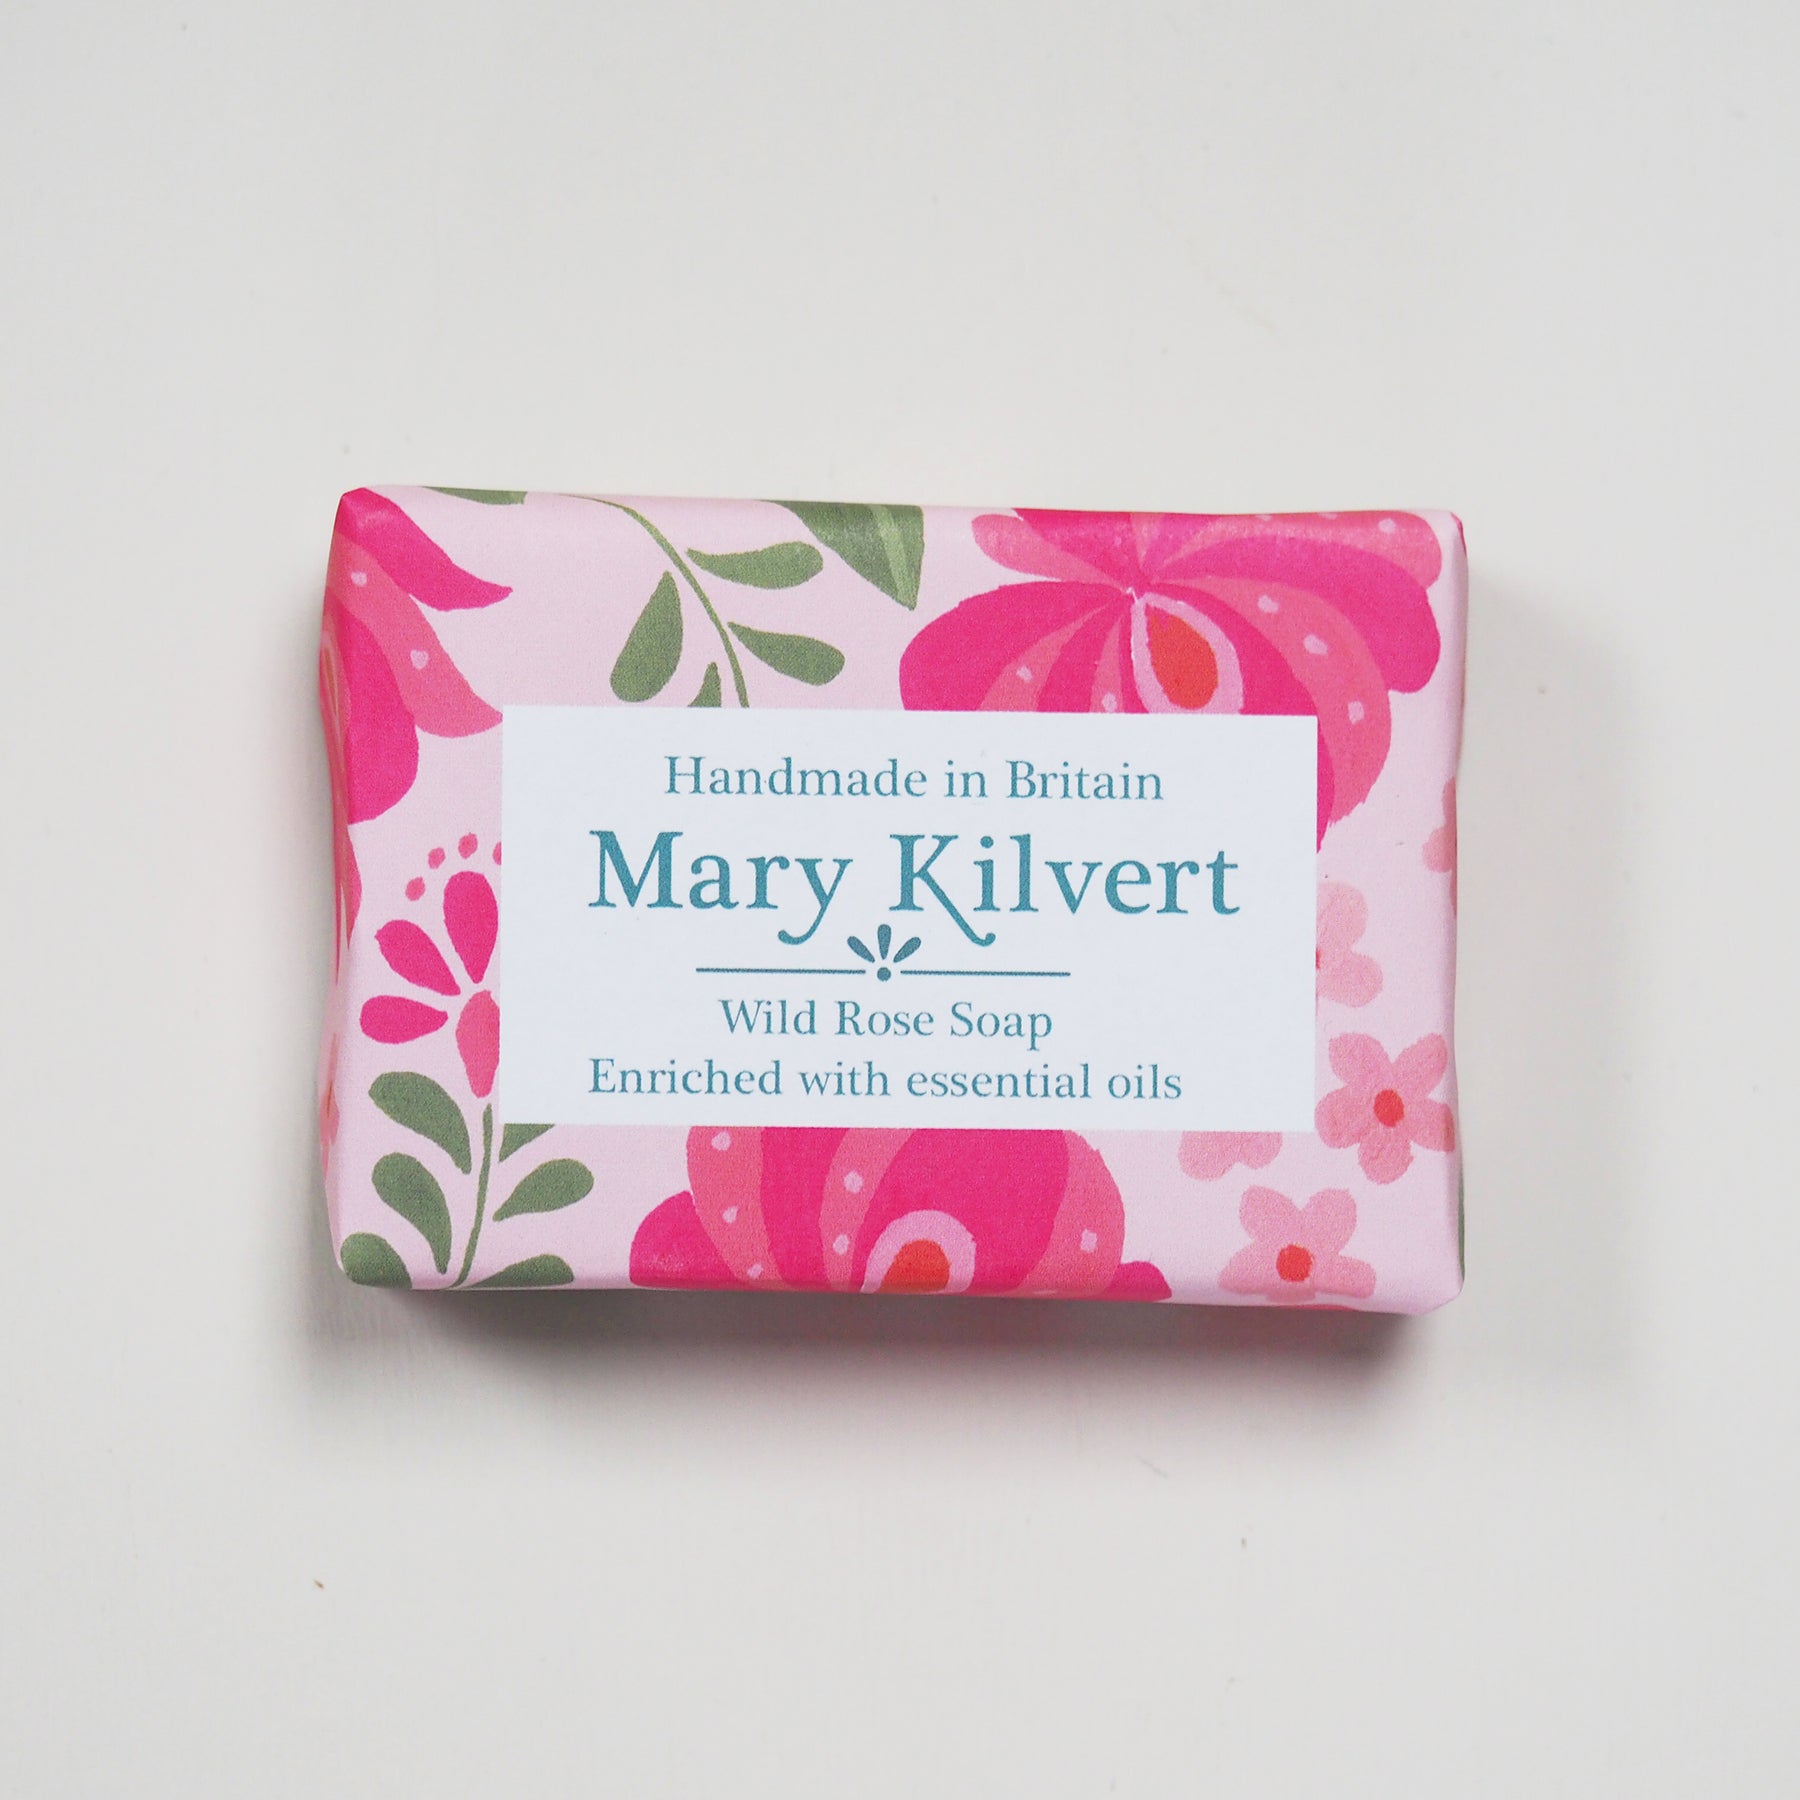 Wild Rose Handmade Soap by Mary Kilvert